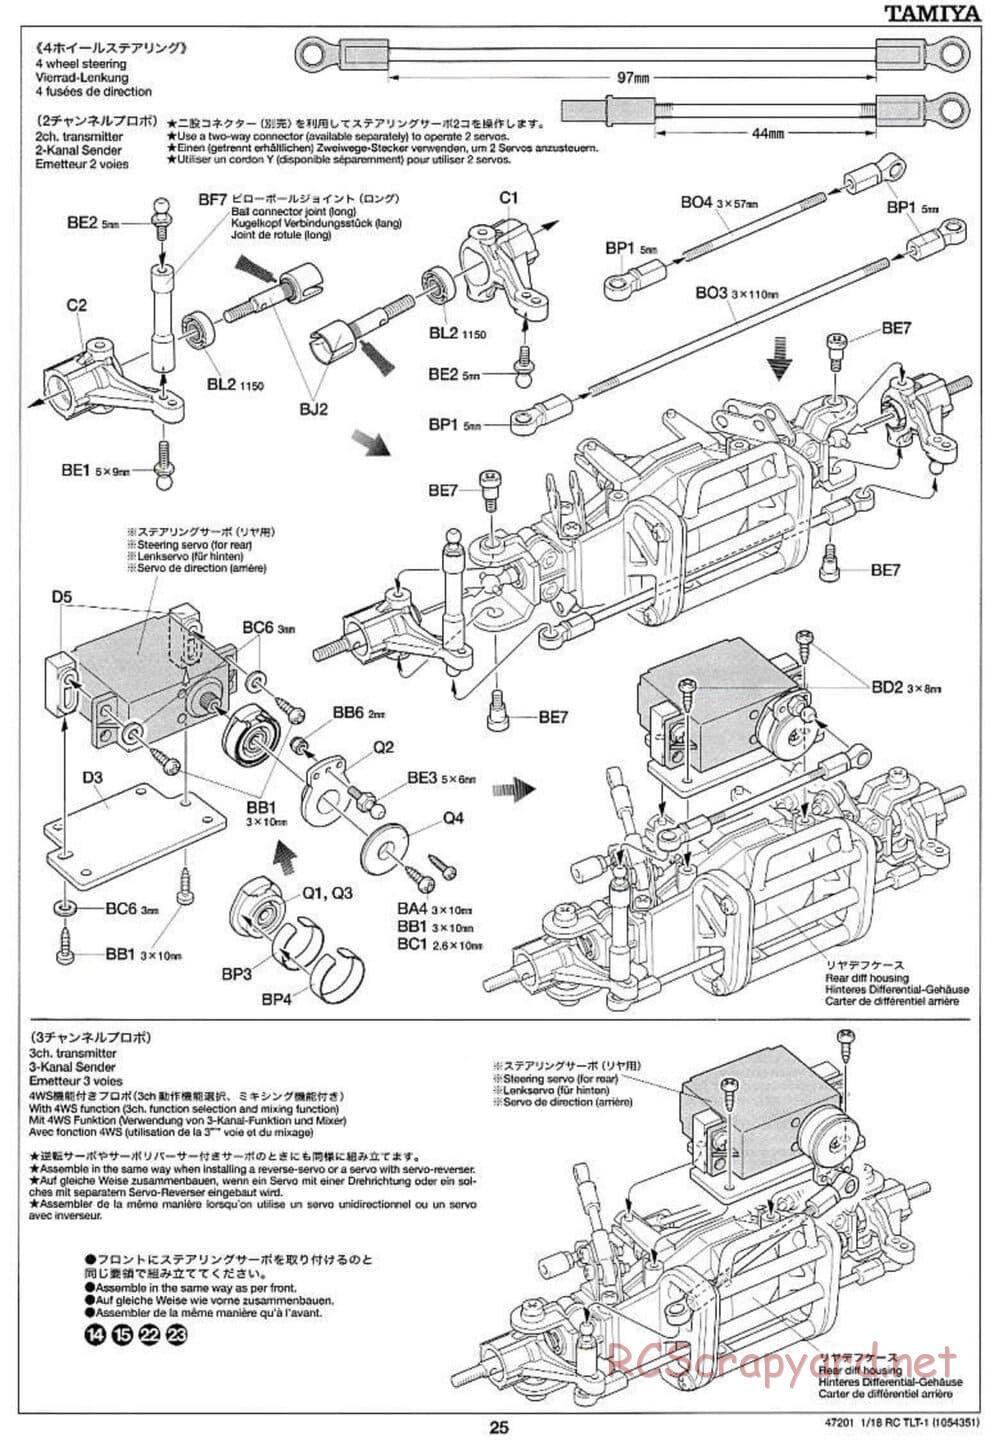 Tamiya - Rock Buster - TLT-1 Chassis - Manual - Page 25